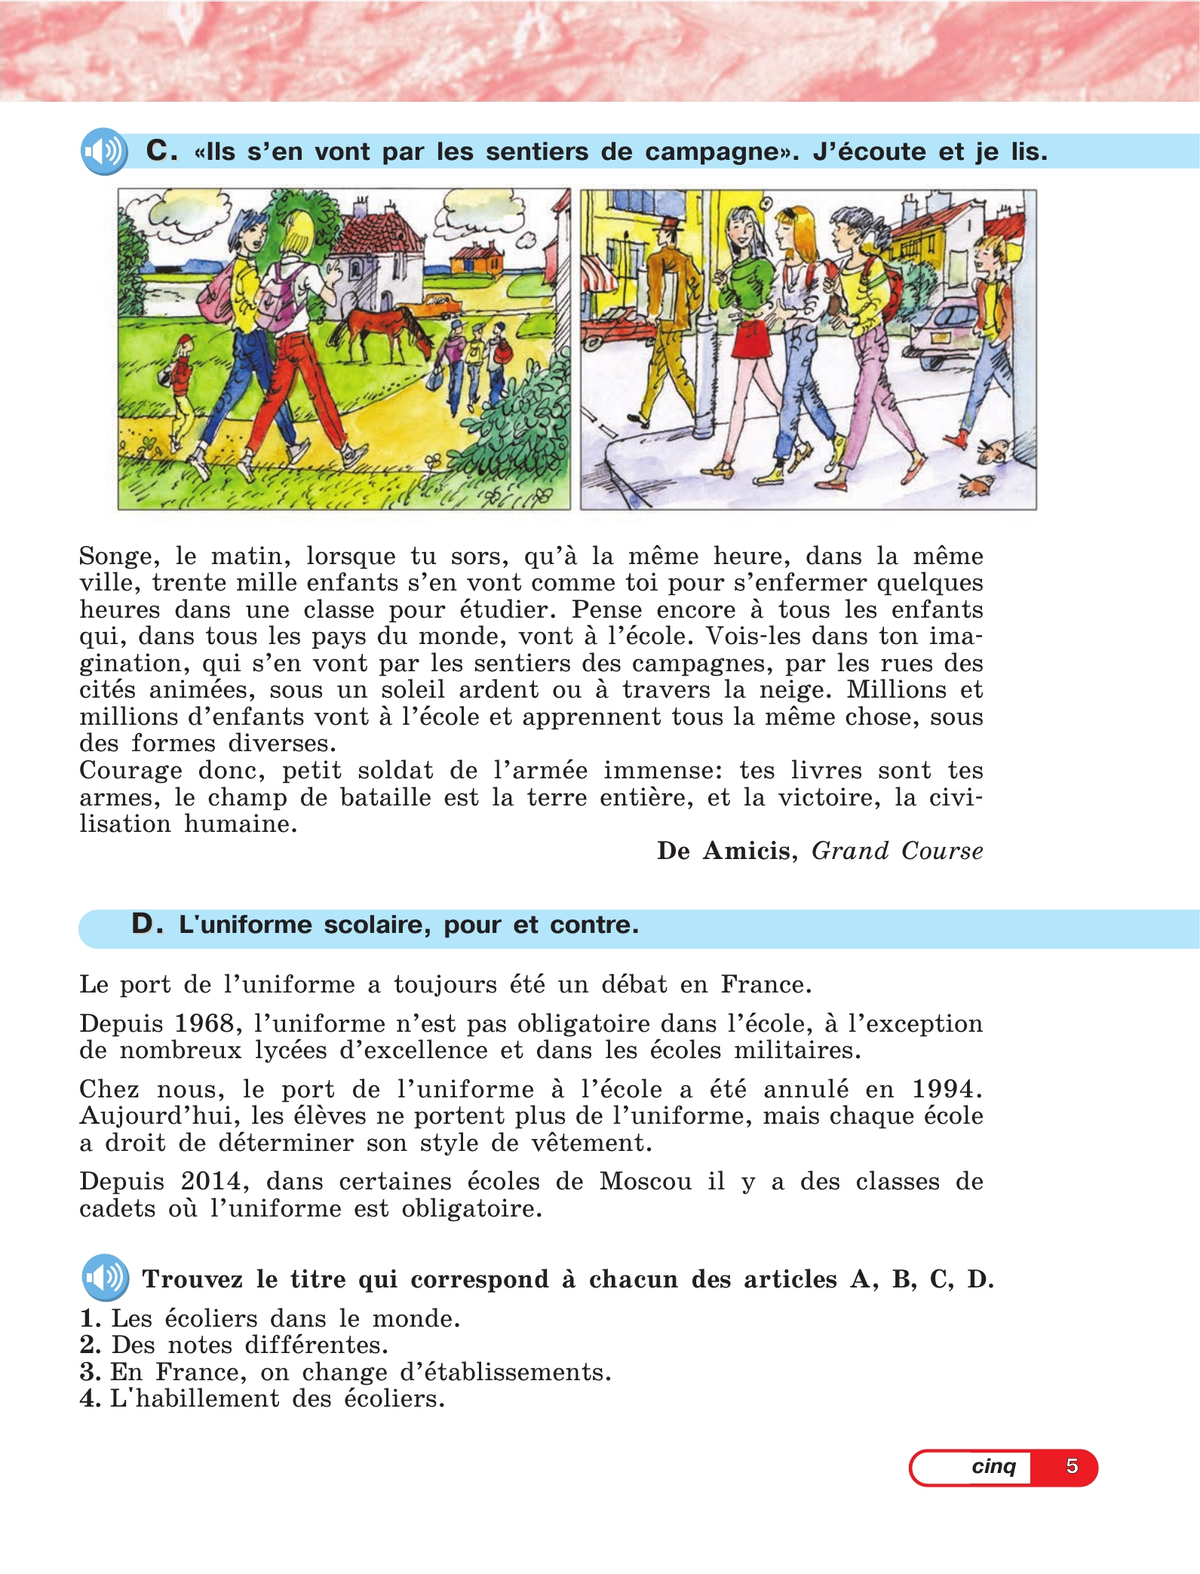 Французский язык. 5 класс. Углублённый уровень. Учебник. В 2 ч. Часть 2. 11